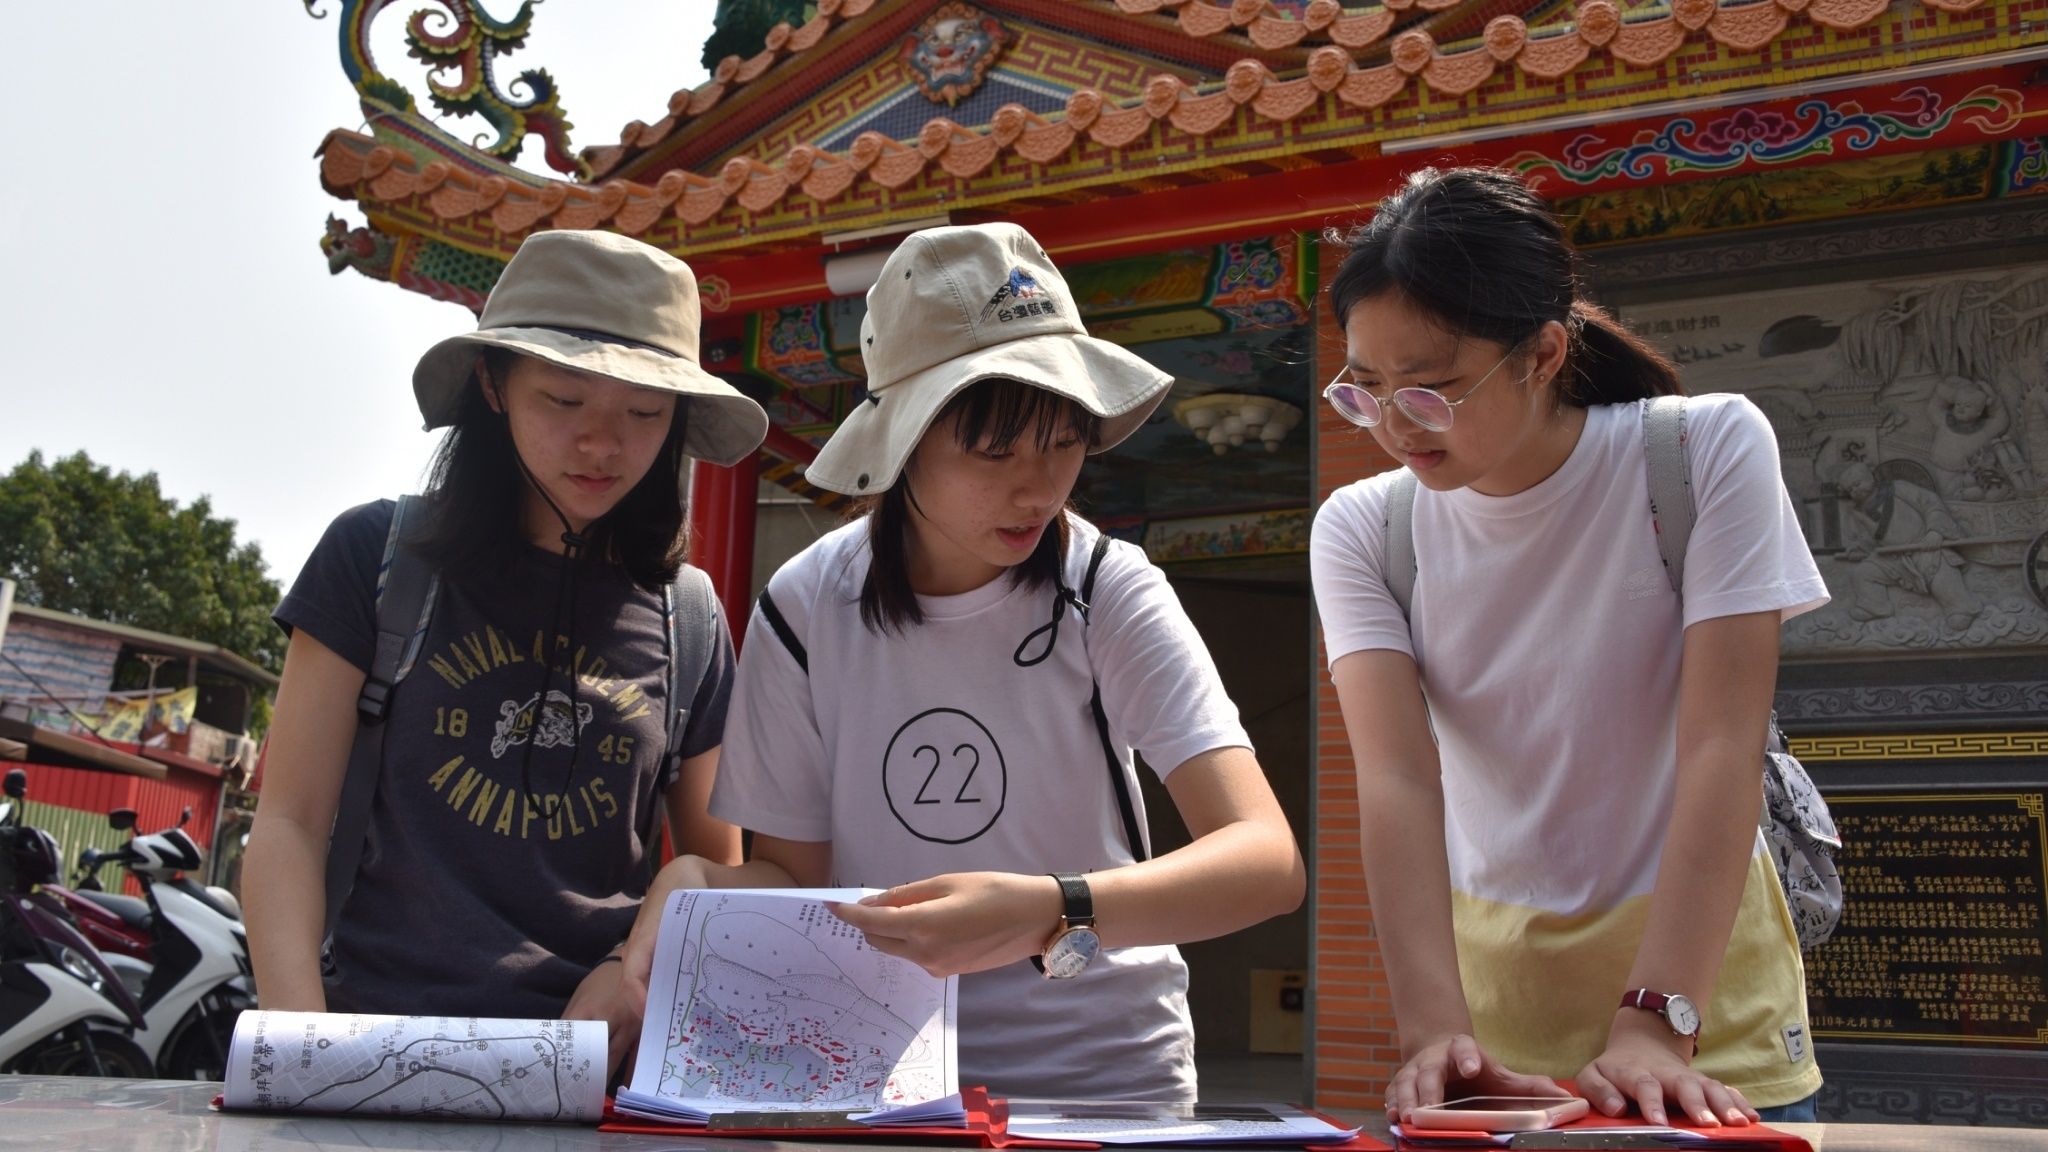 培訓期間選手到新竹進行實地考察，梅立昀（中）、莊千逸（右）研究手中的題目與地圖， 和成員找尋任務指定的廟宇及門牌。台灣師範大學地理學系提供。